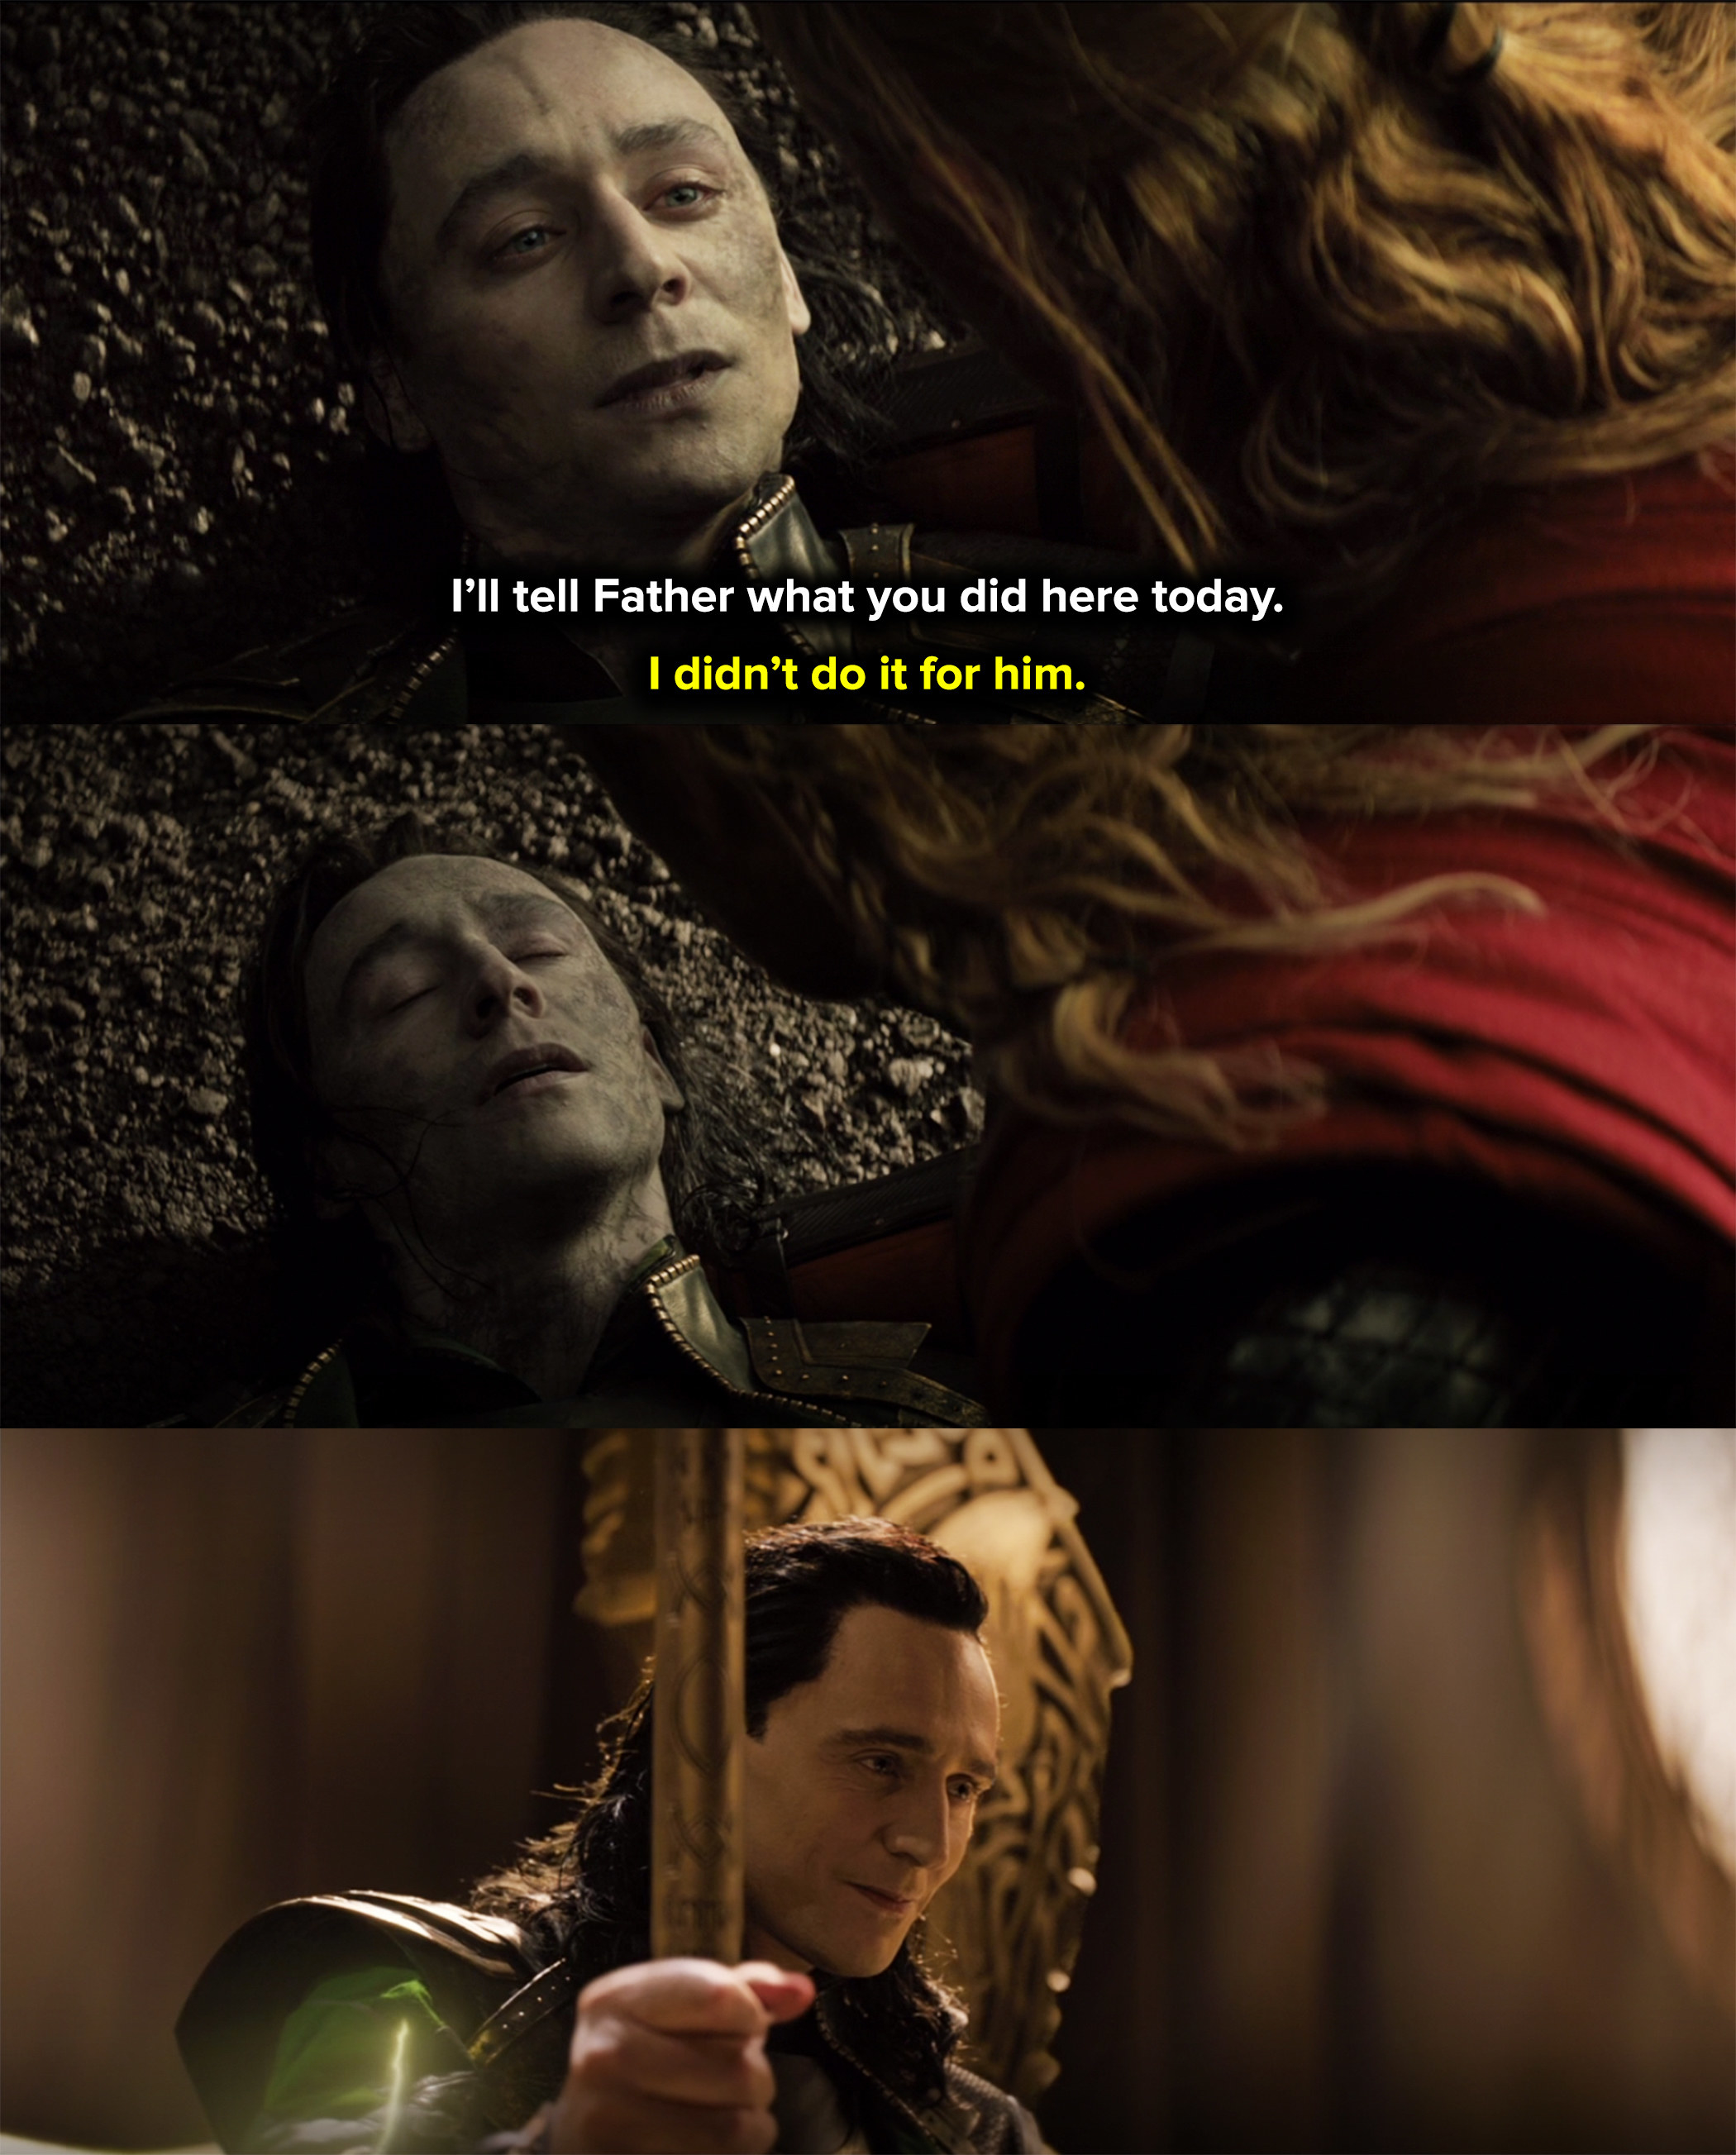 Loki staged a heroic death